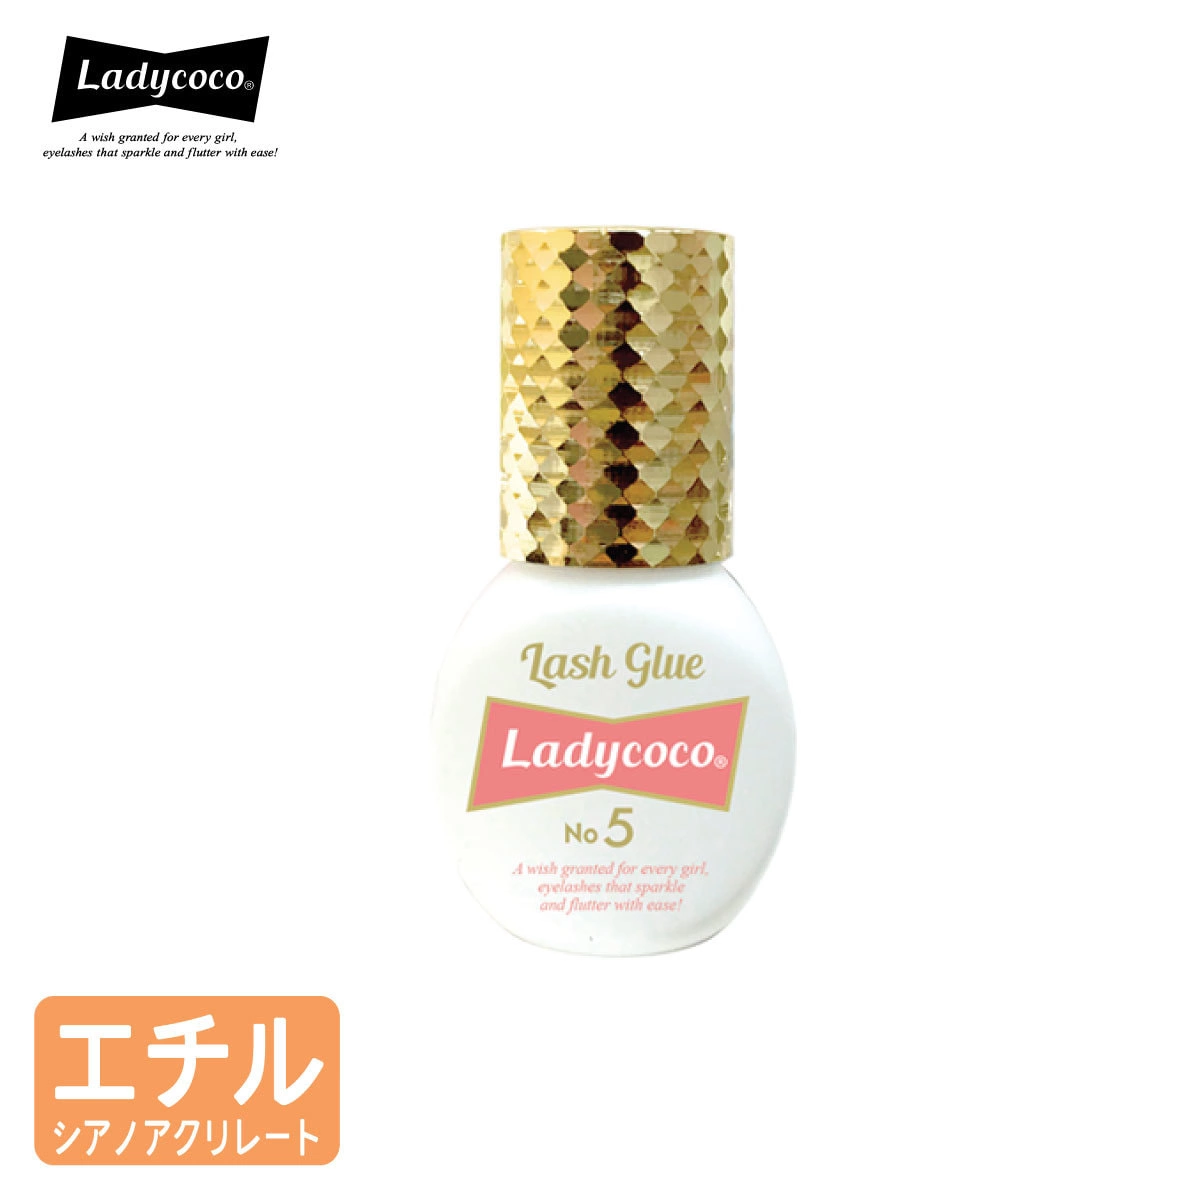 【LADYCOCO】Lash Glue No.5 5ml